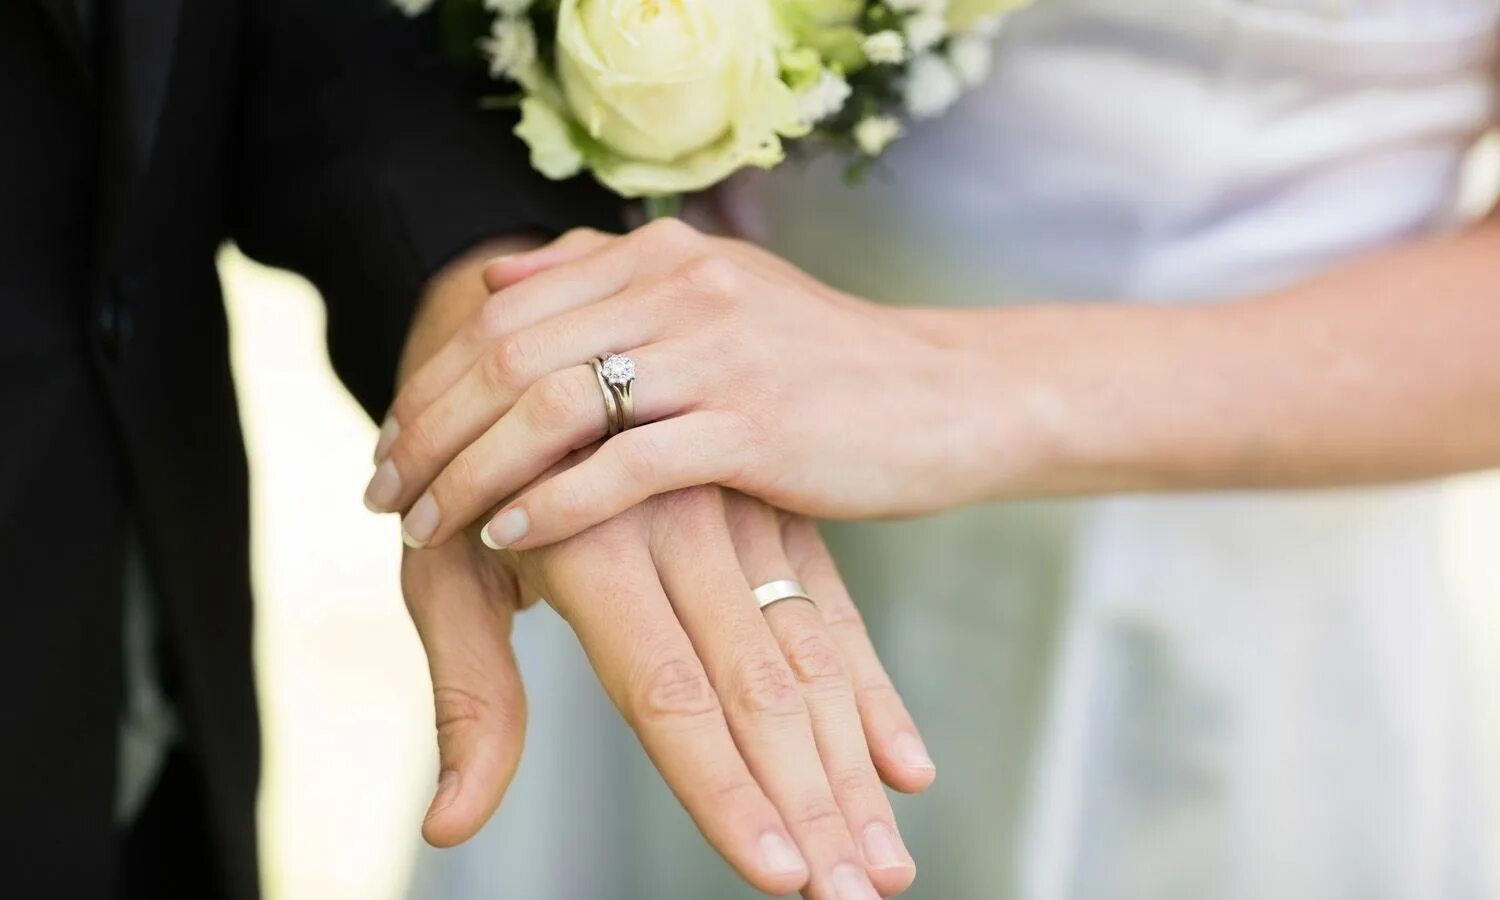 Кольцо замужества. Руки молодоженов с кольцами. Свадебные кольца на руках. Руки жениха и невесты с кольцами. Обручальные и помолвочные кольца.